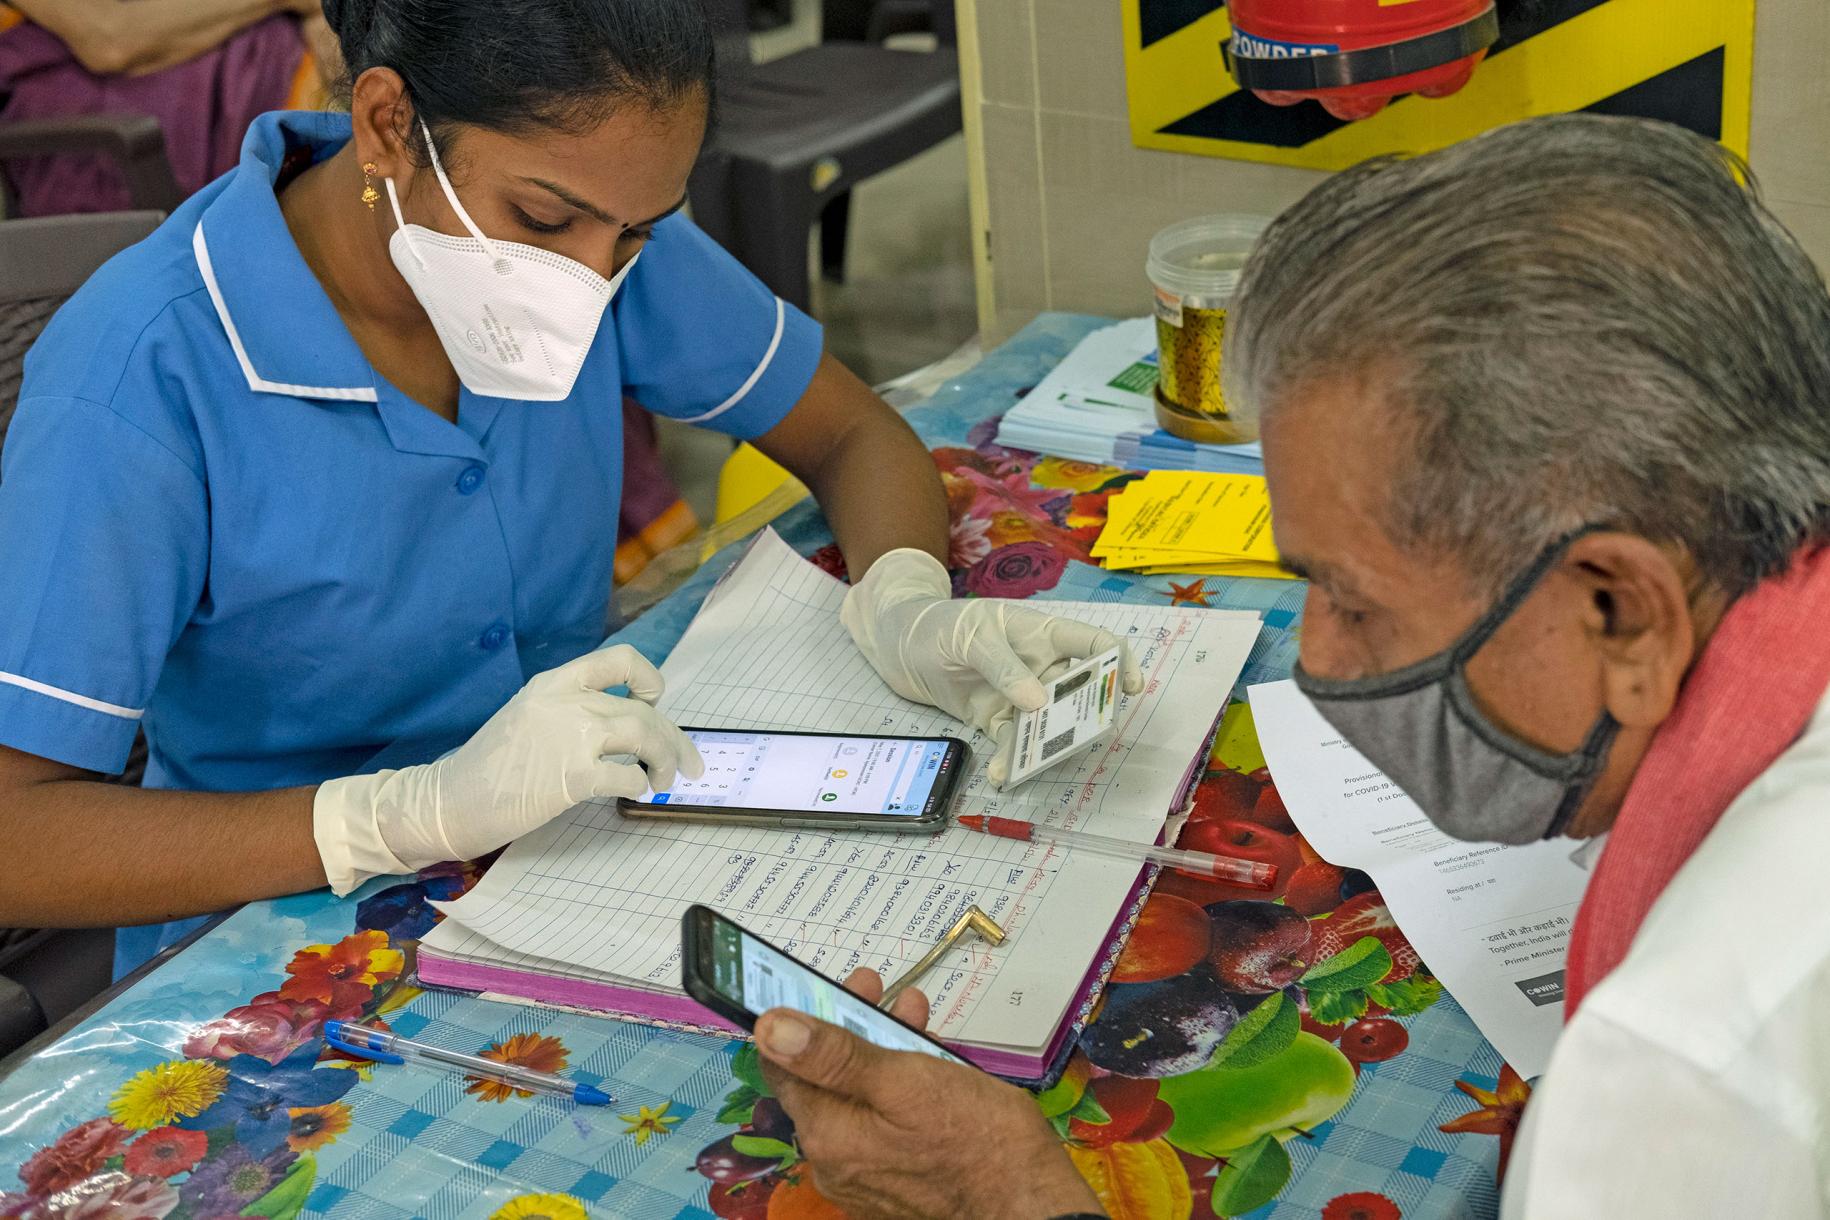 Une professionnelle de santé vêtue d’une blouse bleue consigne dans un application mobile le vaccin anti COVID-19 que l’homme assis devant elle vient de se faire administrer.